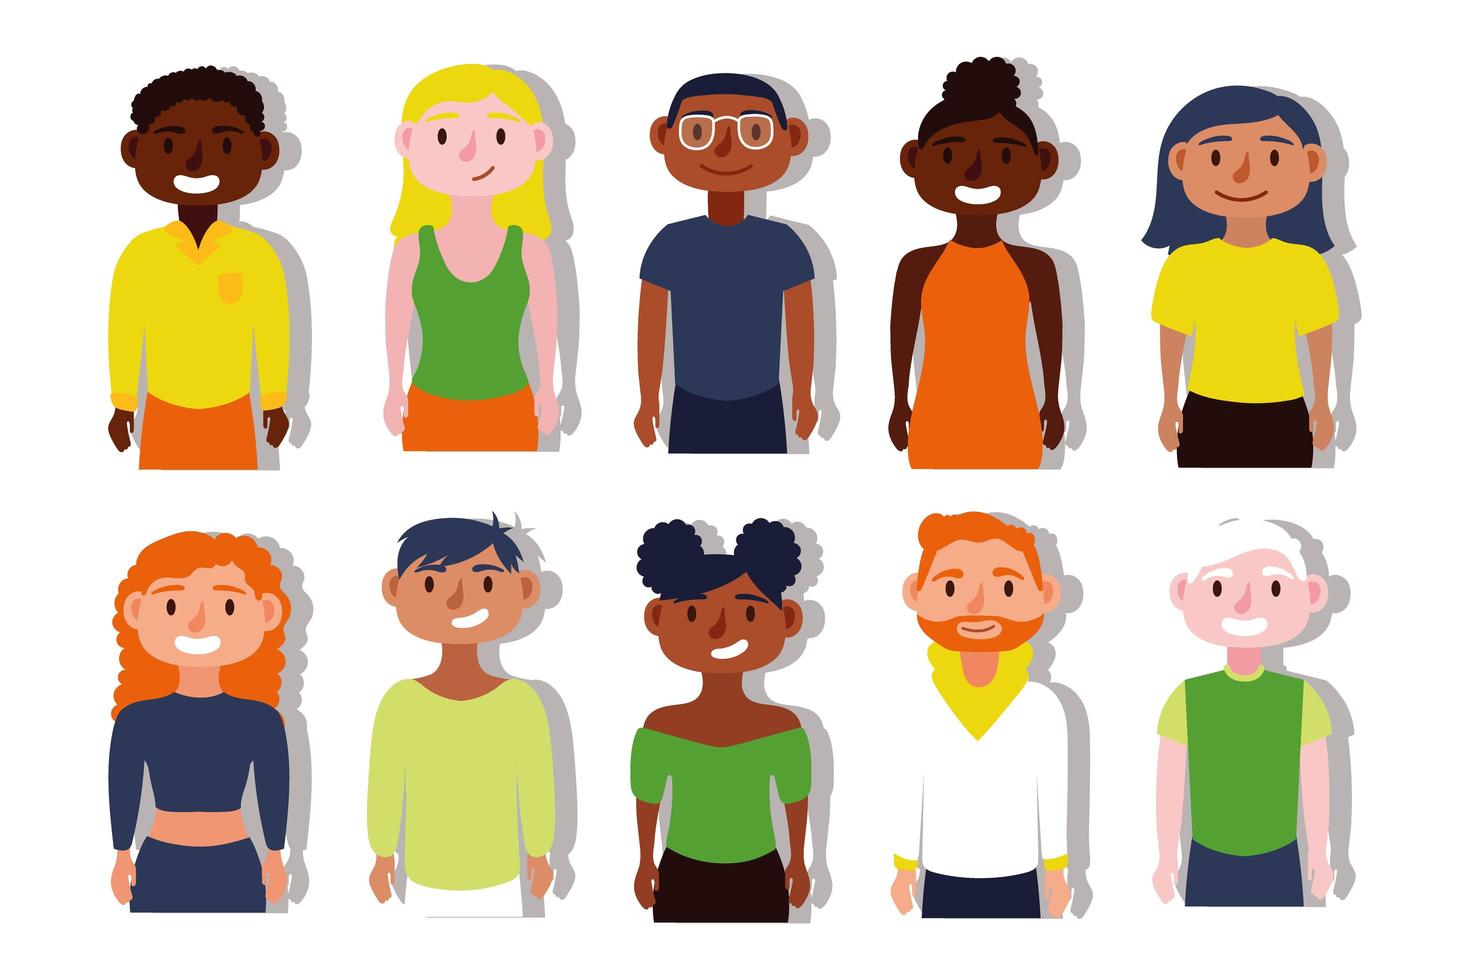 grupo de personas interraciales, concepto de inclusión vector